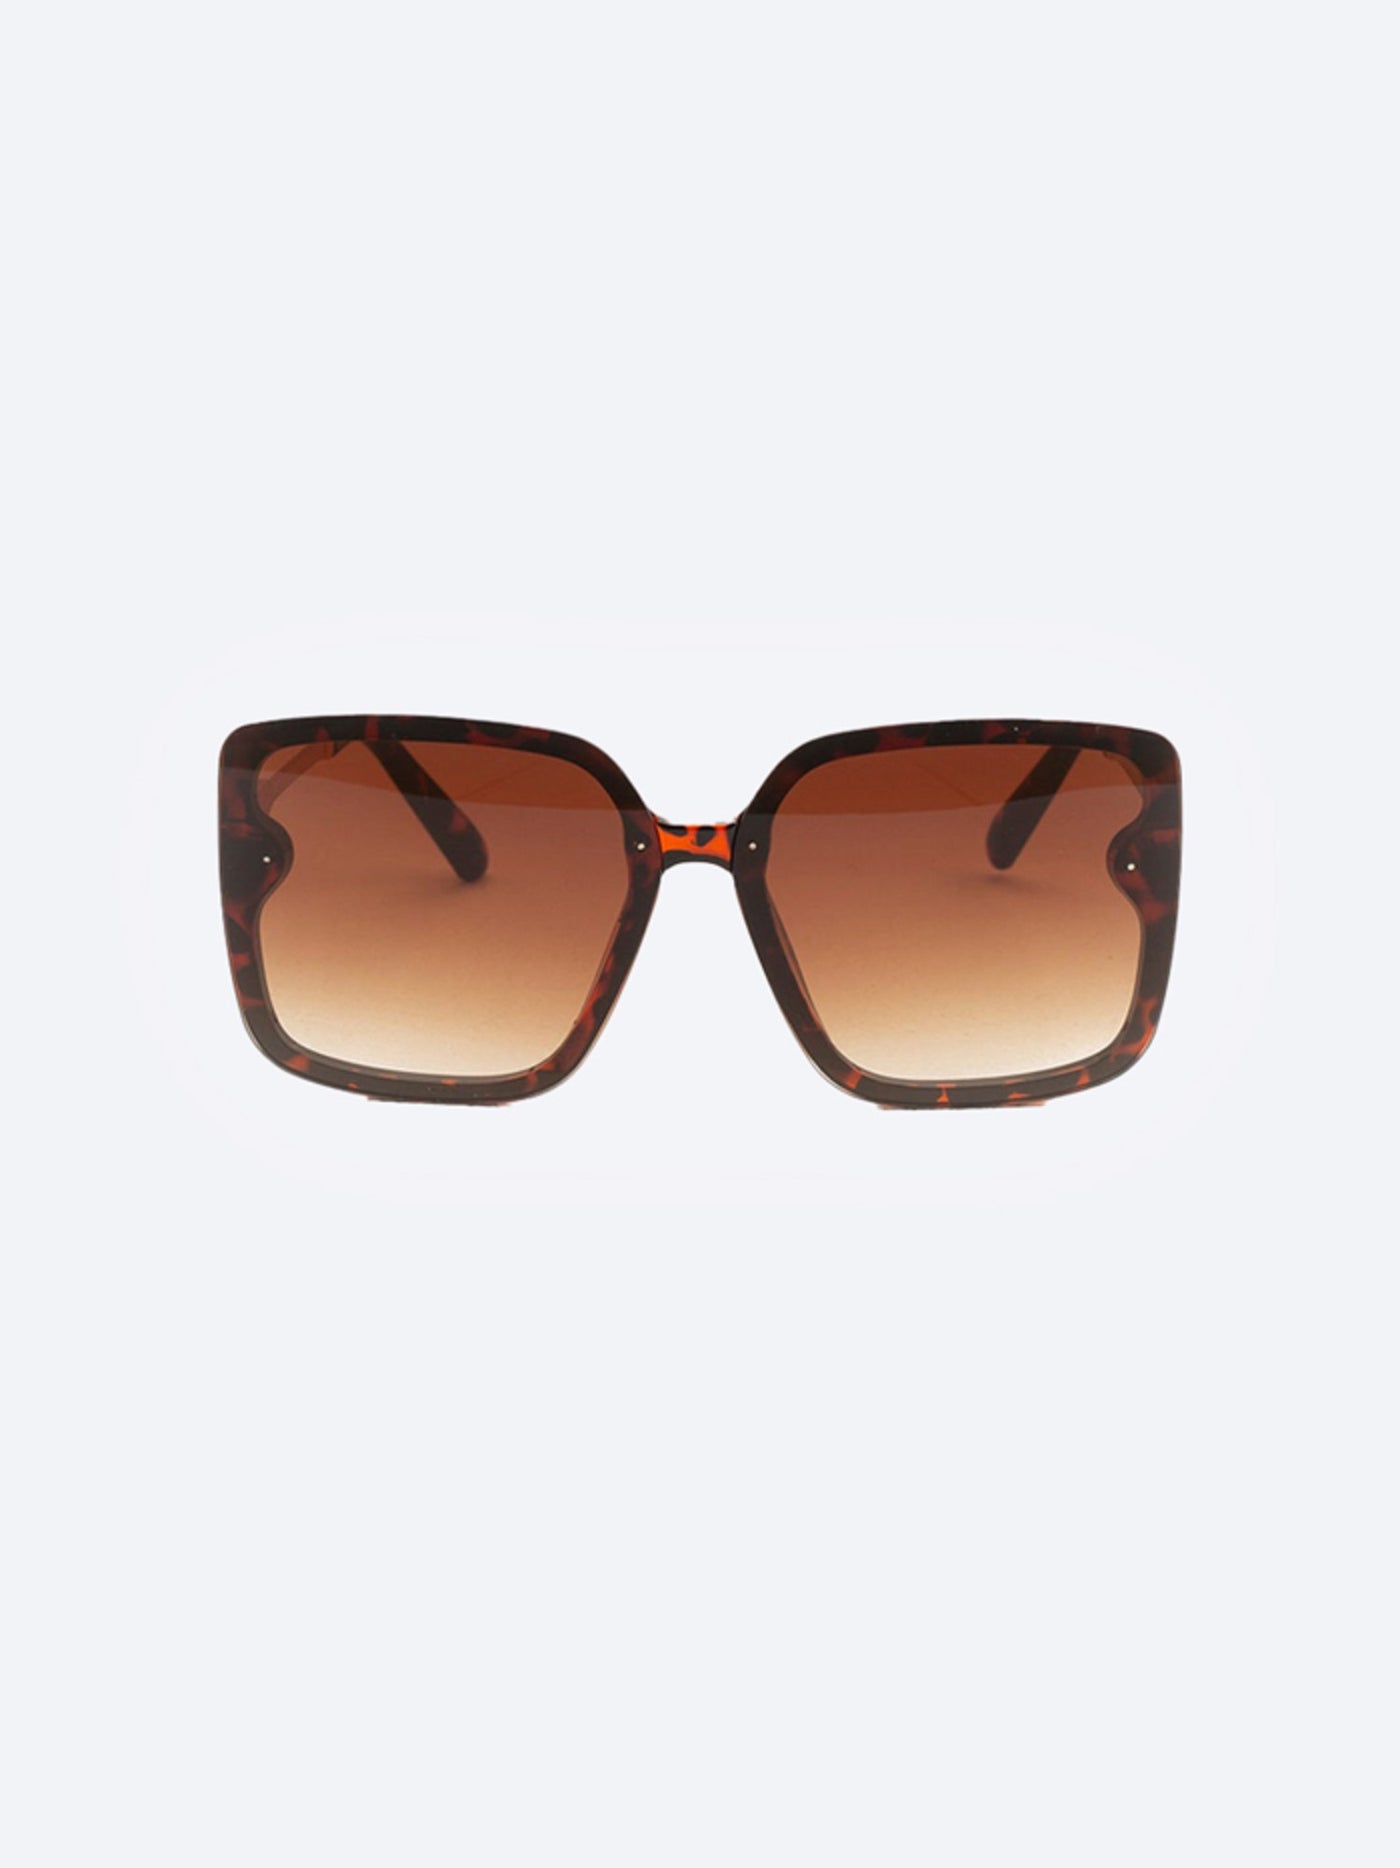 Sunglasses - Square Frame